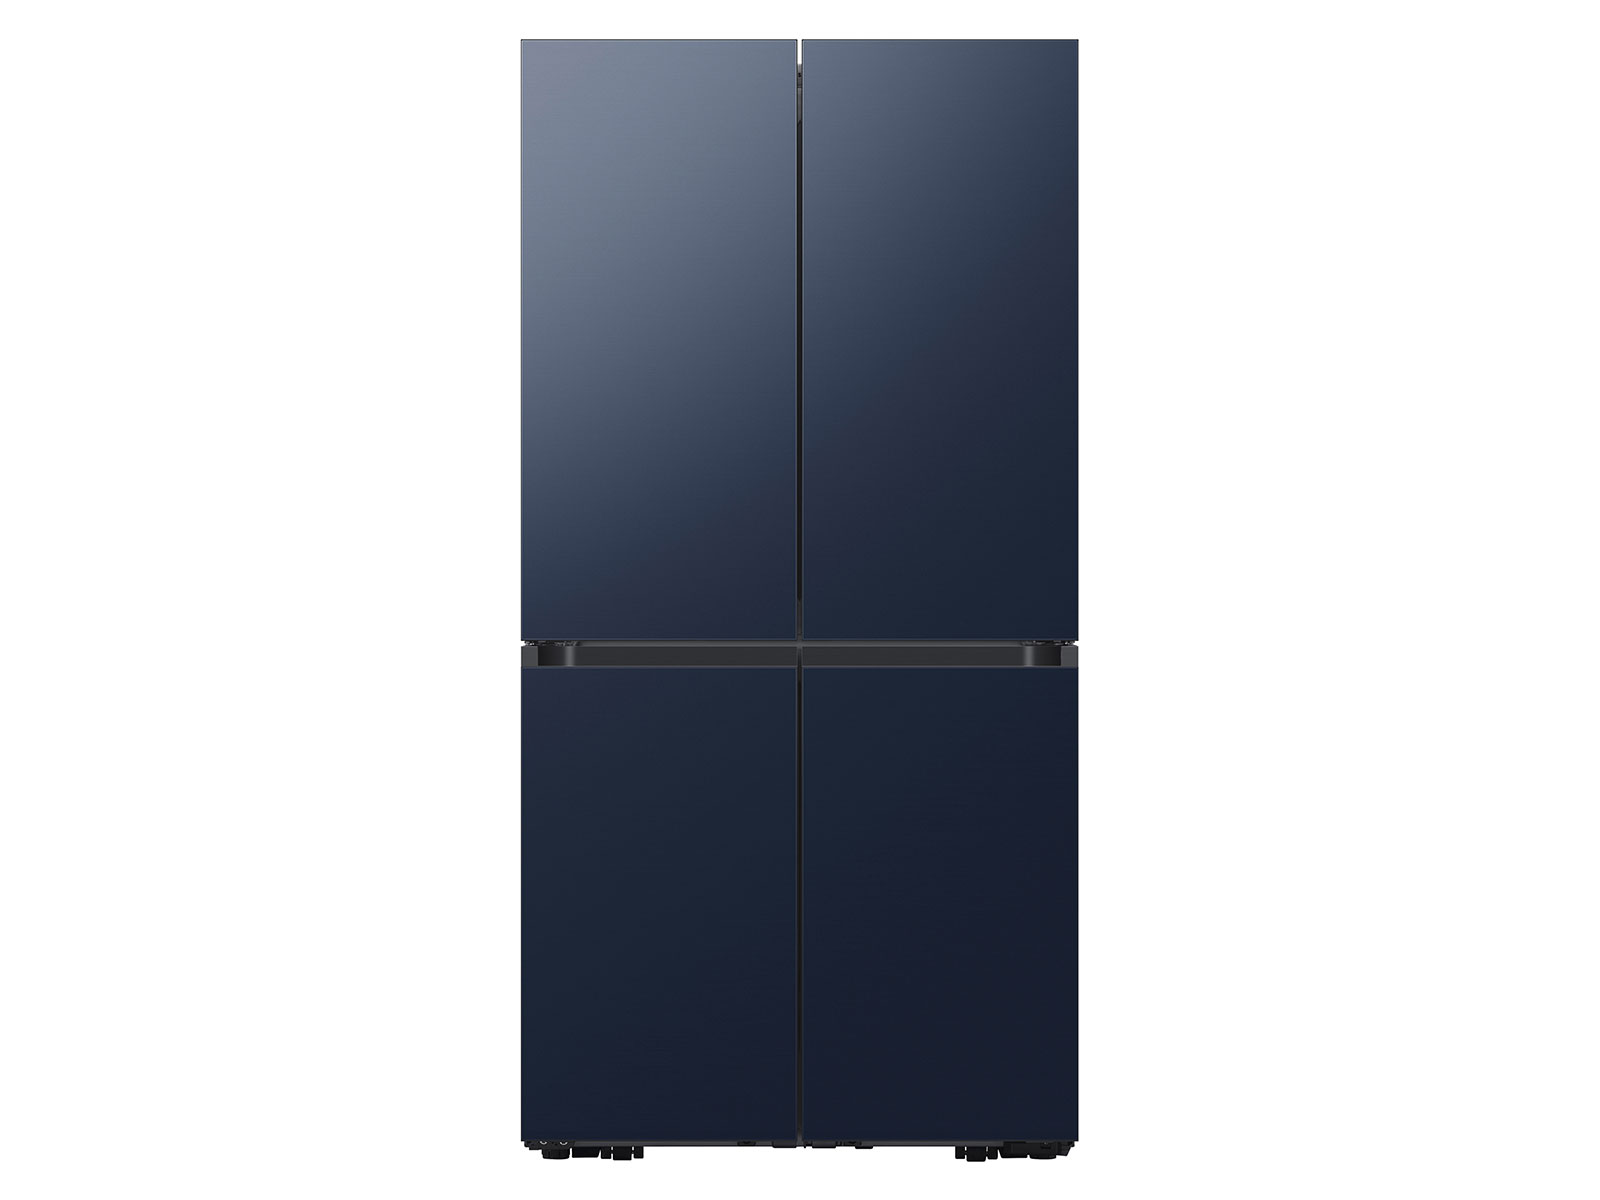 Bespoke 4-Door Flex™ Refrigerator (29 cu. ft.) in Navy Steel